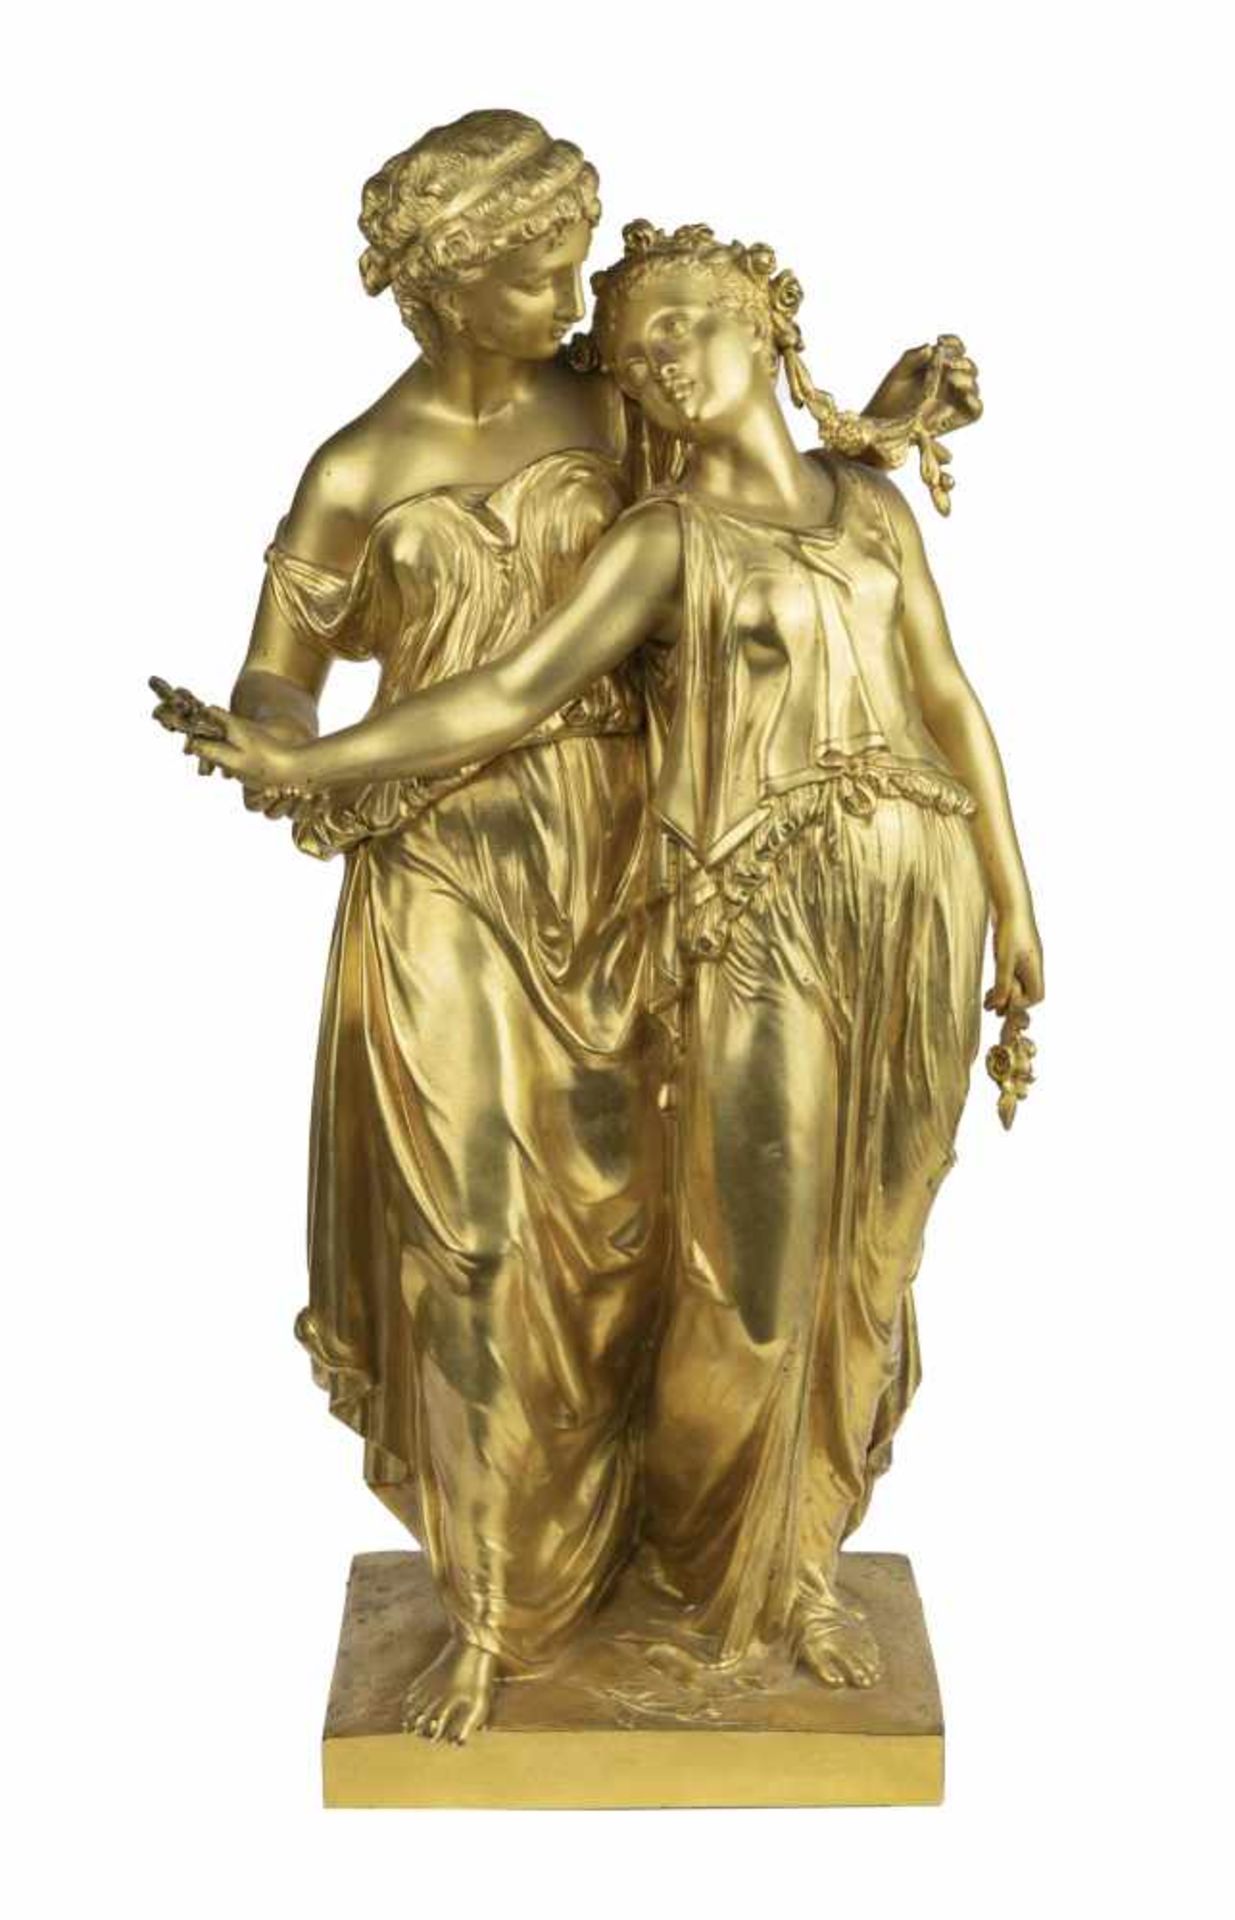 JAMES PRADIER (?)Groupe aux nymphesGroupe en bronze sculpté et doré portant une signature